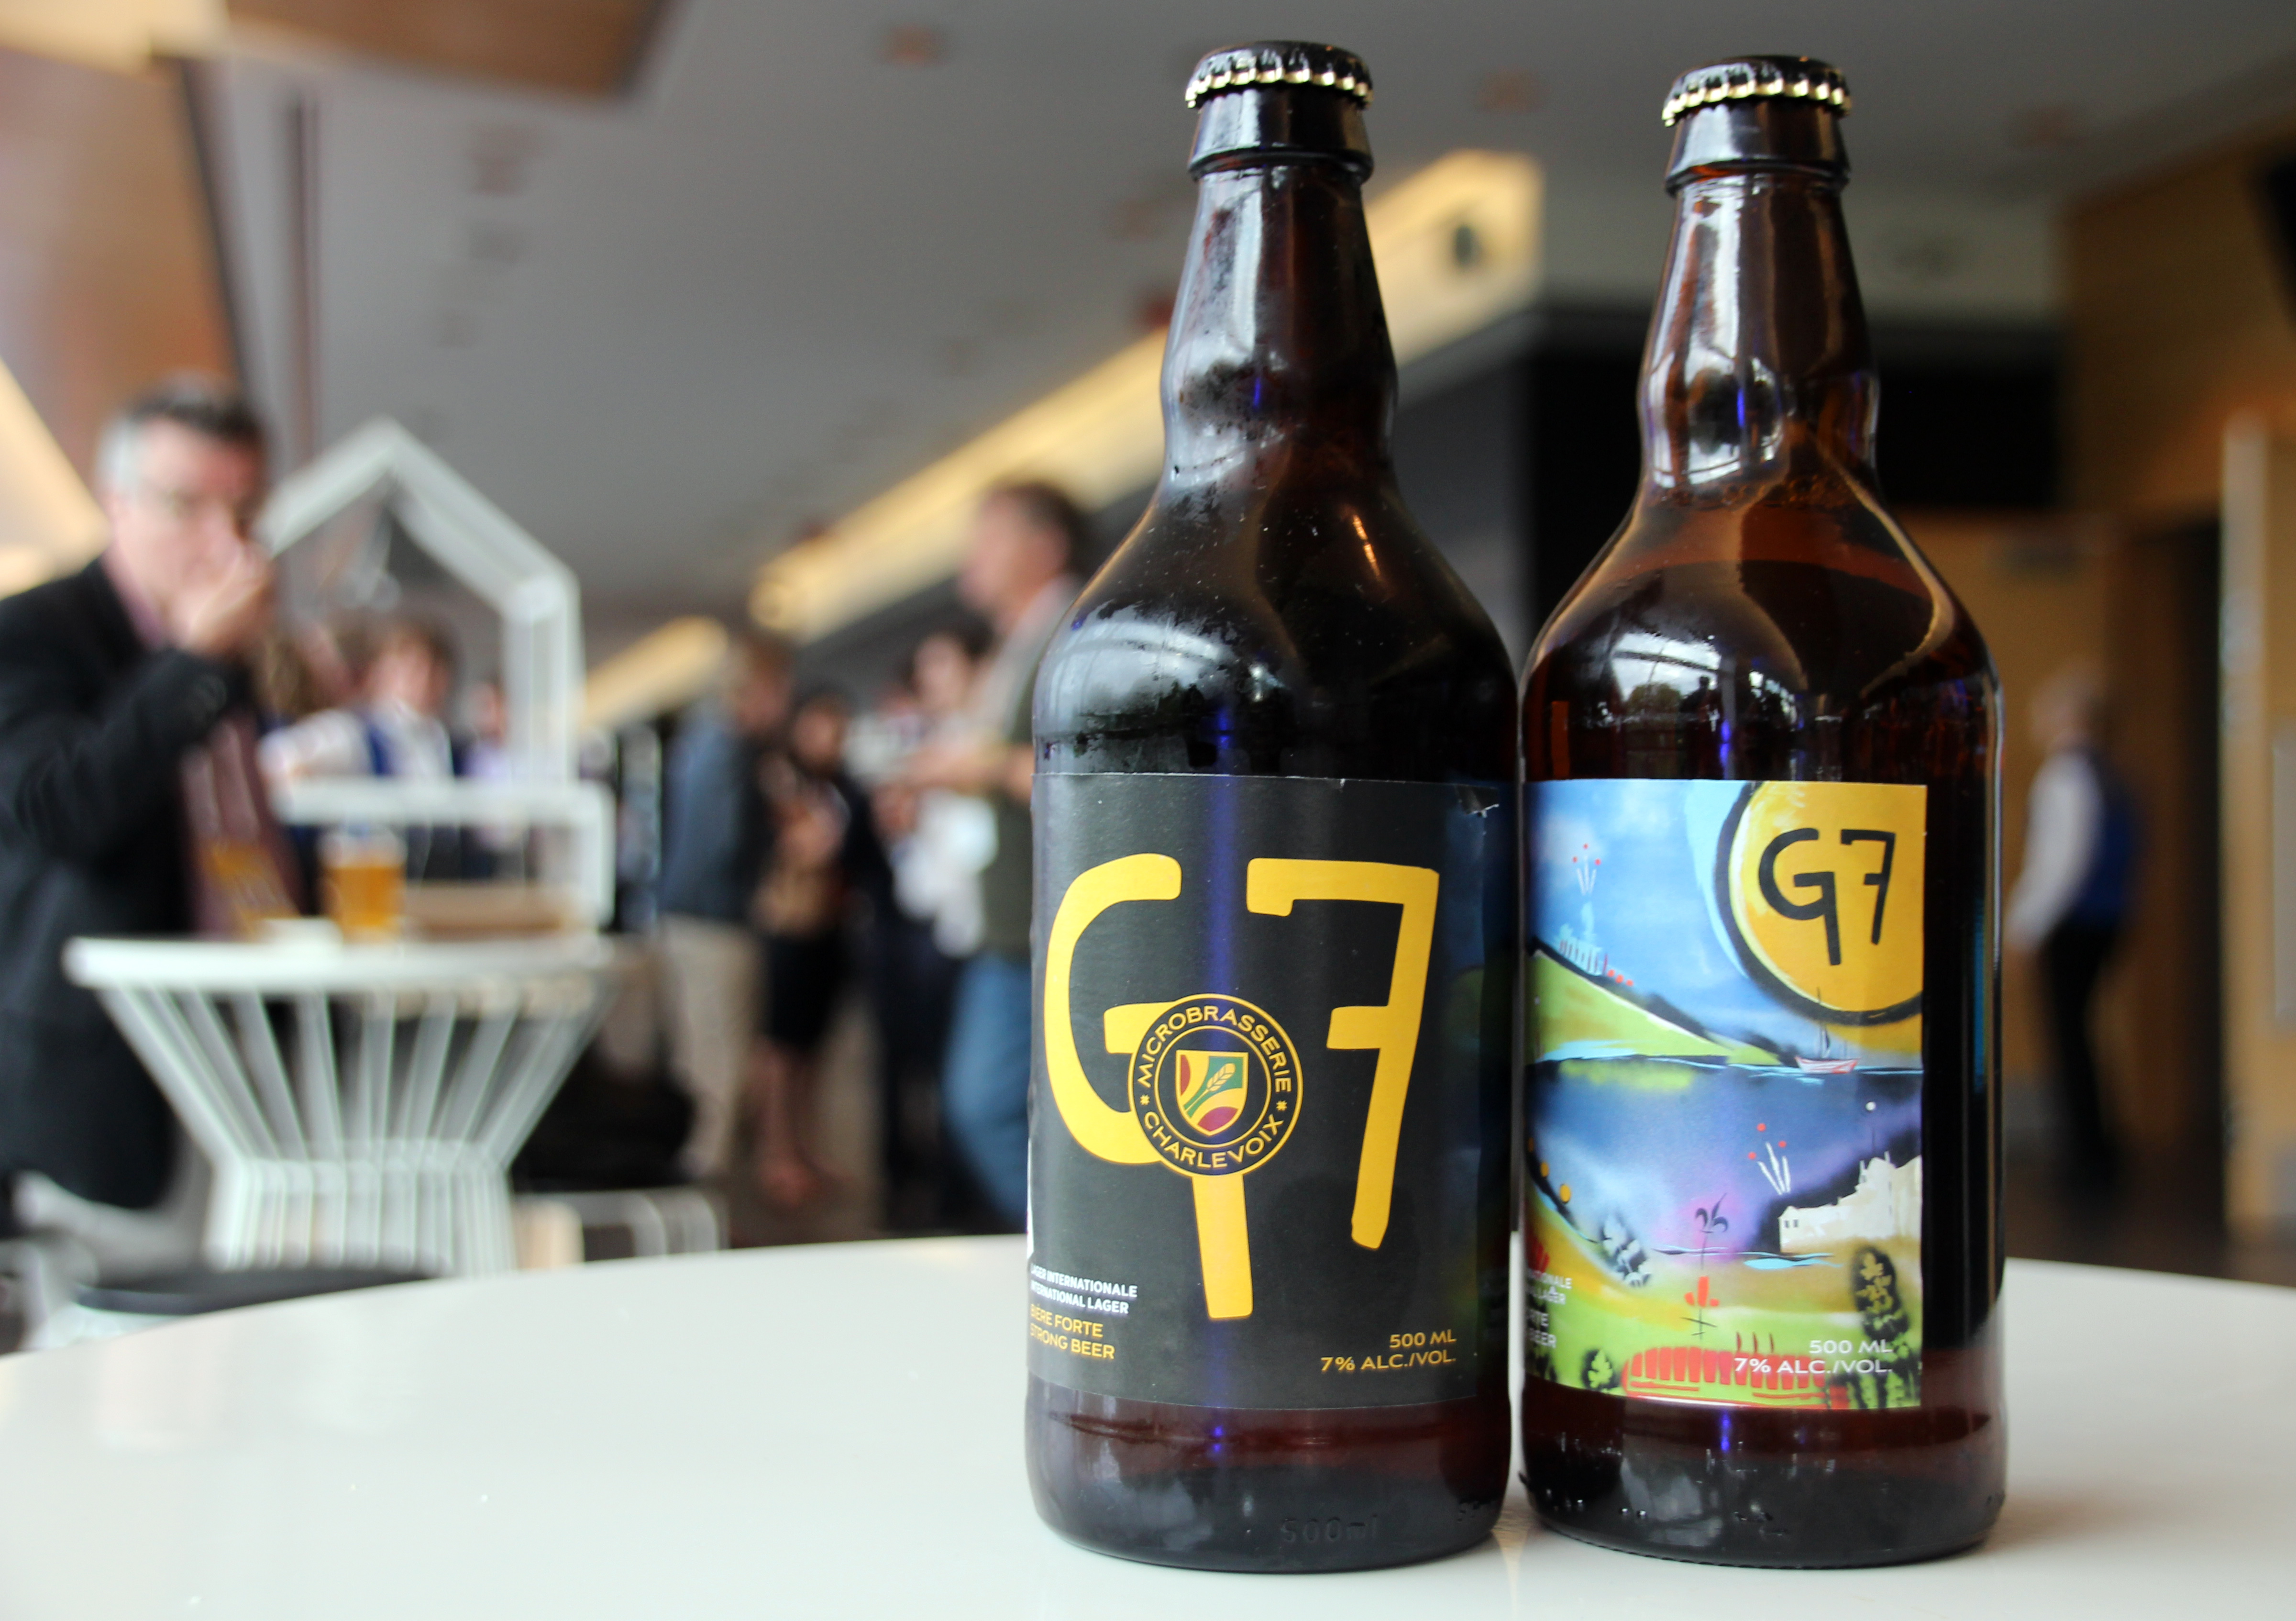 Egy kis sörfőzde 7 százalékos alkoholtartalmú G7 sörrel látta el a résztvevőket, hozzávalókat állítólag az összes G7-tagállamból szállítottak, tehát Kanadából, az Egyesült Államokból, Németországból, Japánból, Olaszországból, az Egyesült Királyságból és Franciaországból is